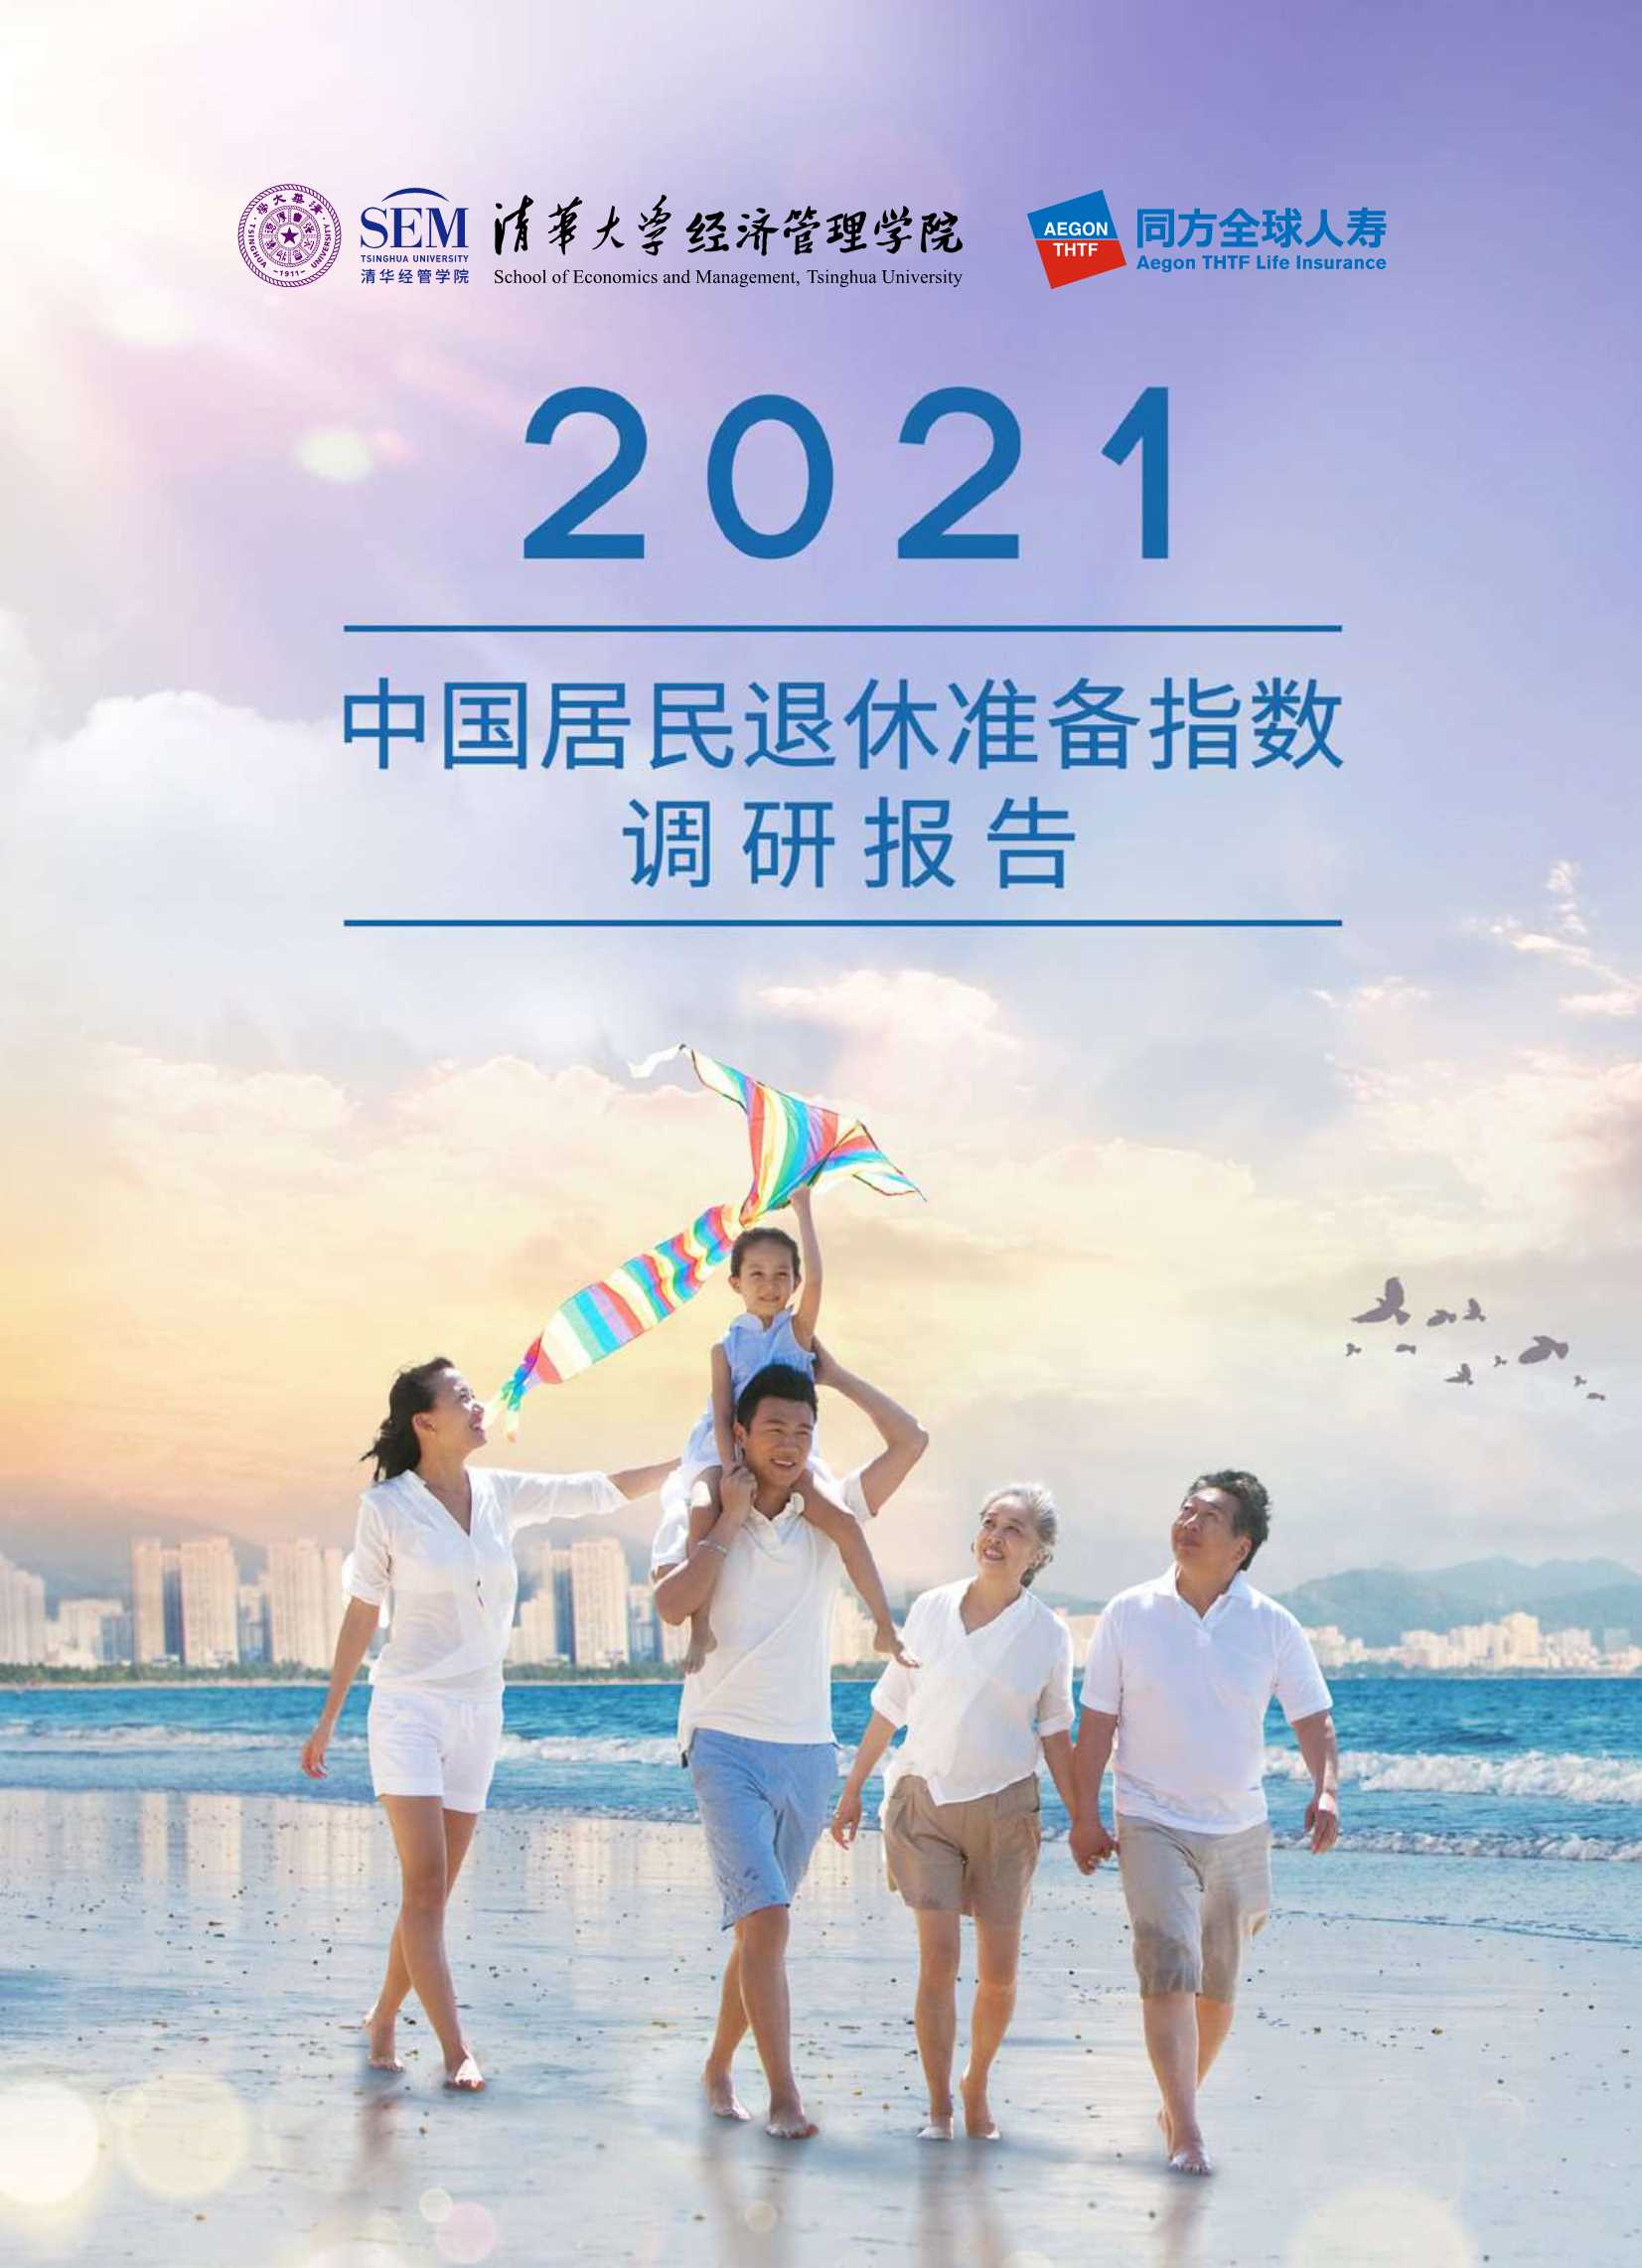 清华大学&同方人寿-2021中国居民退休准备指数调研报告-2021.11-60页